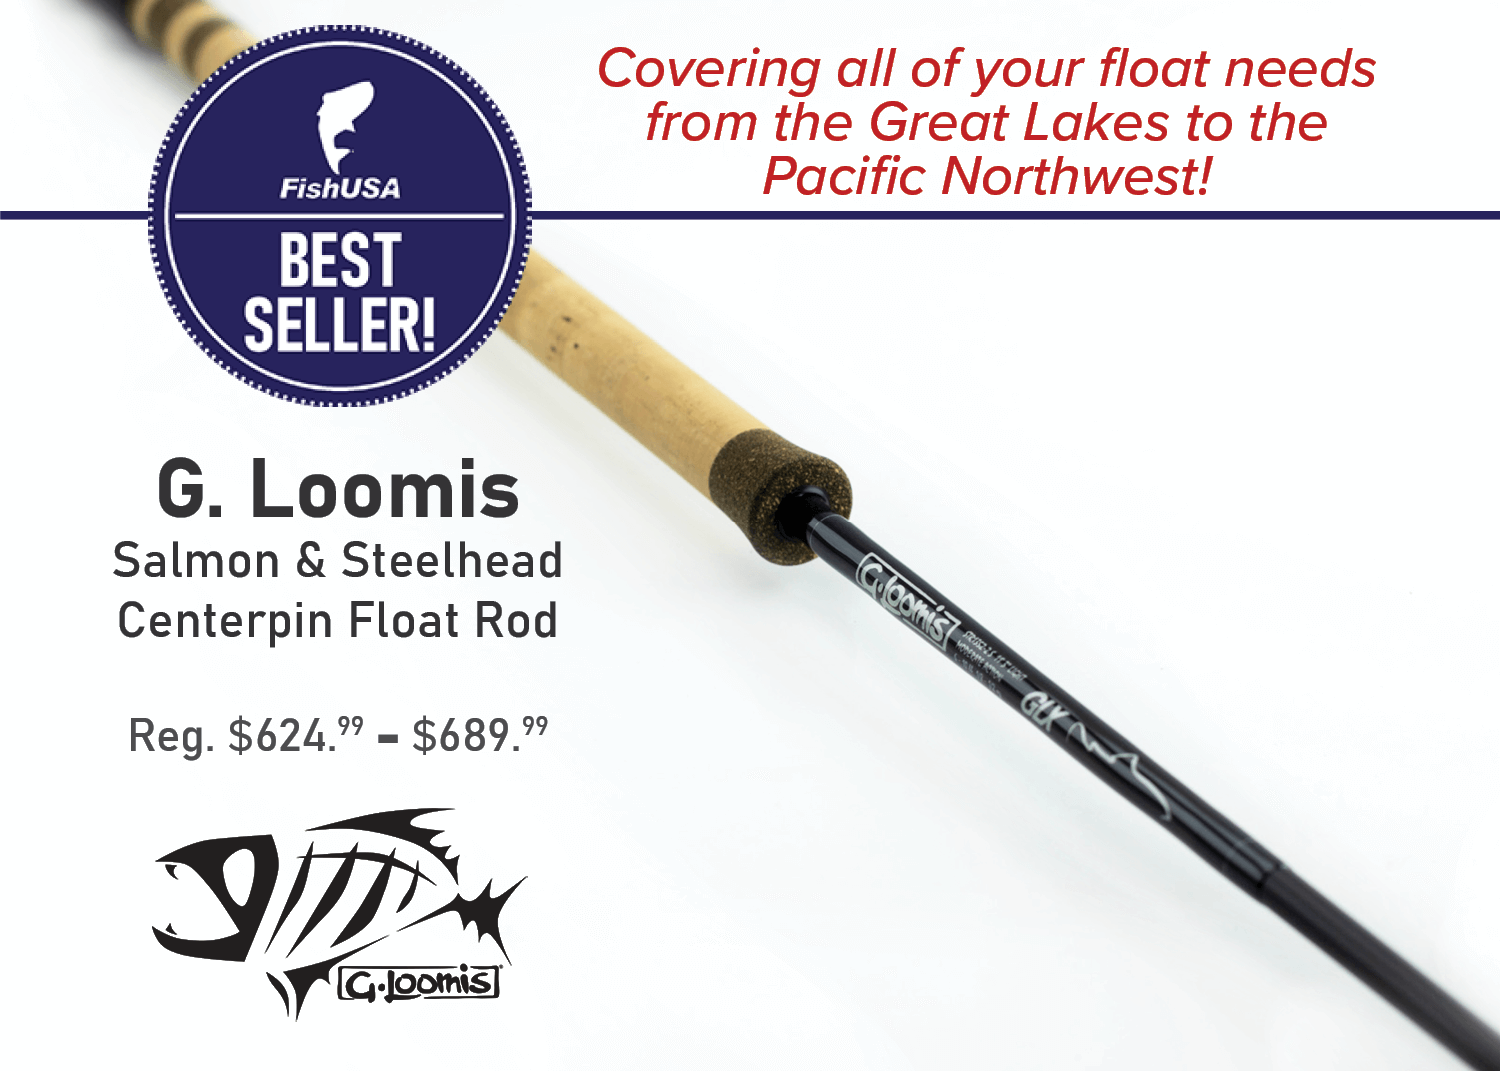 G. Loomis Salmon & Steelhead Centerpin Float Rod